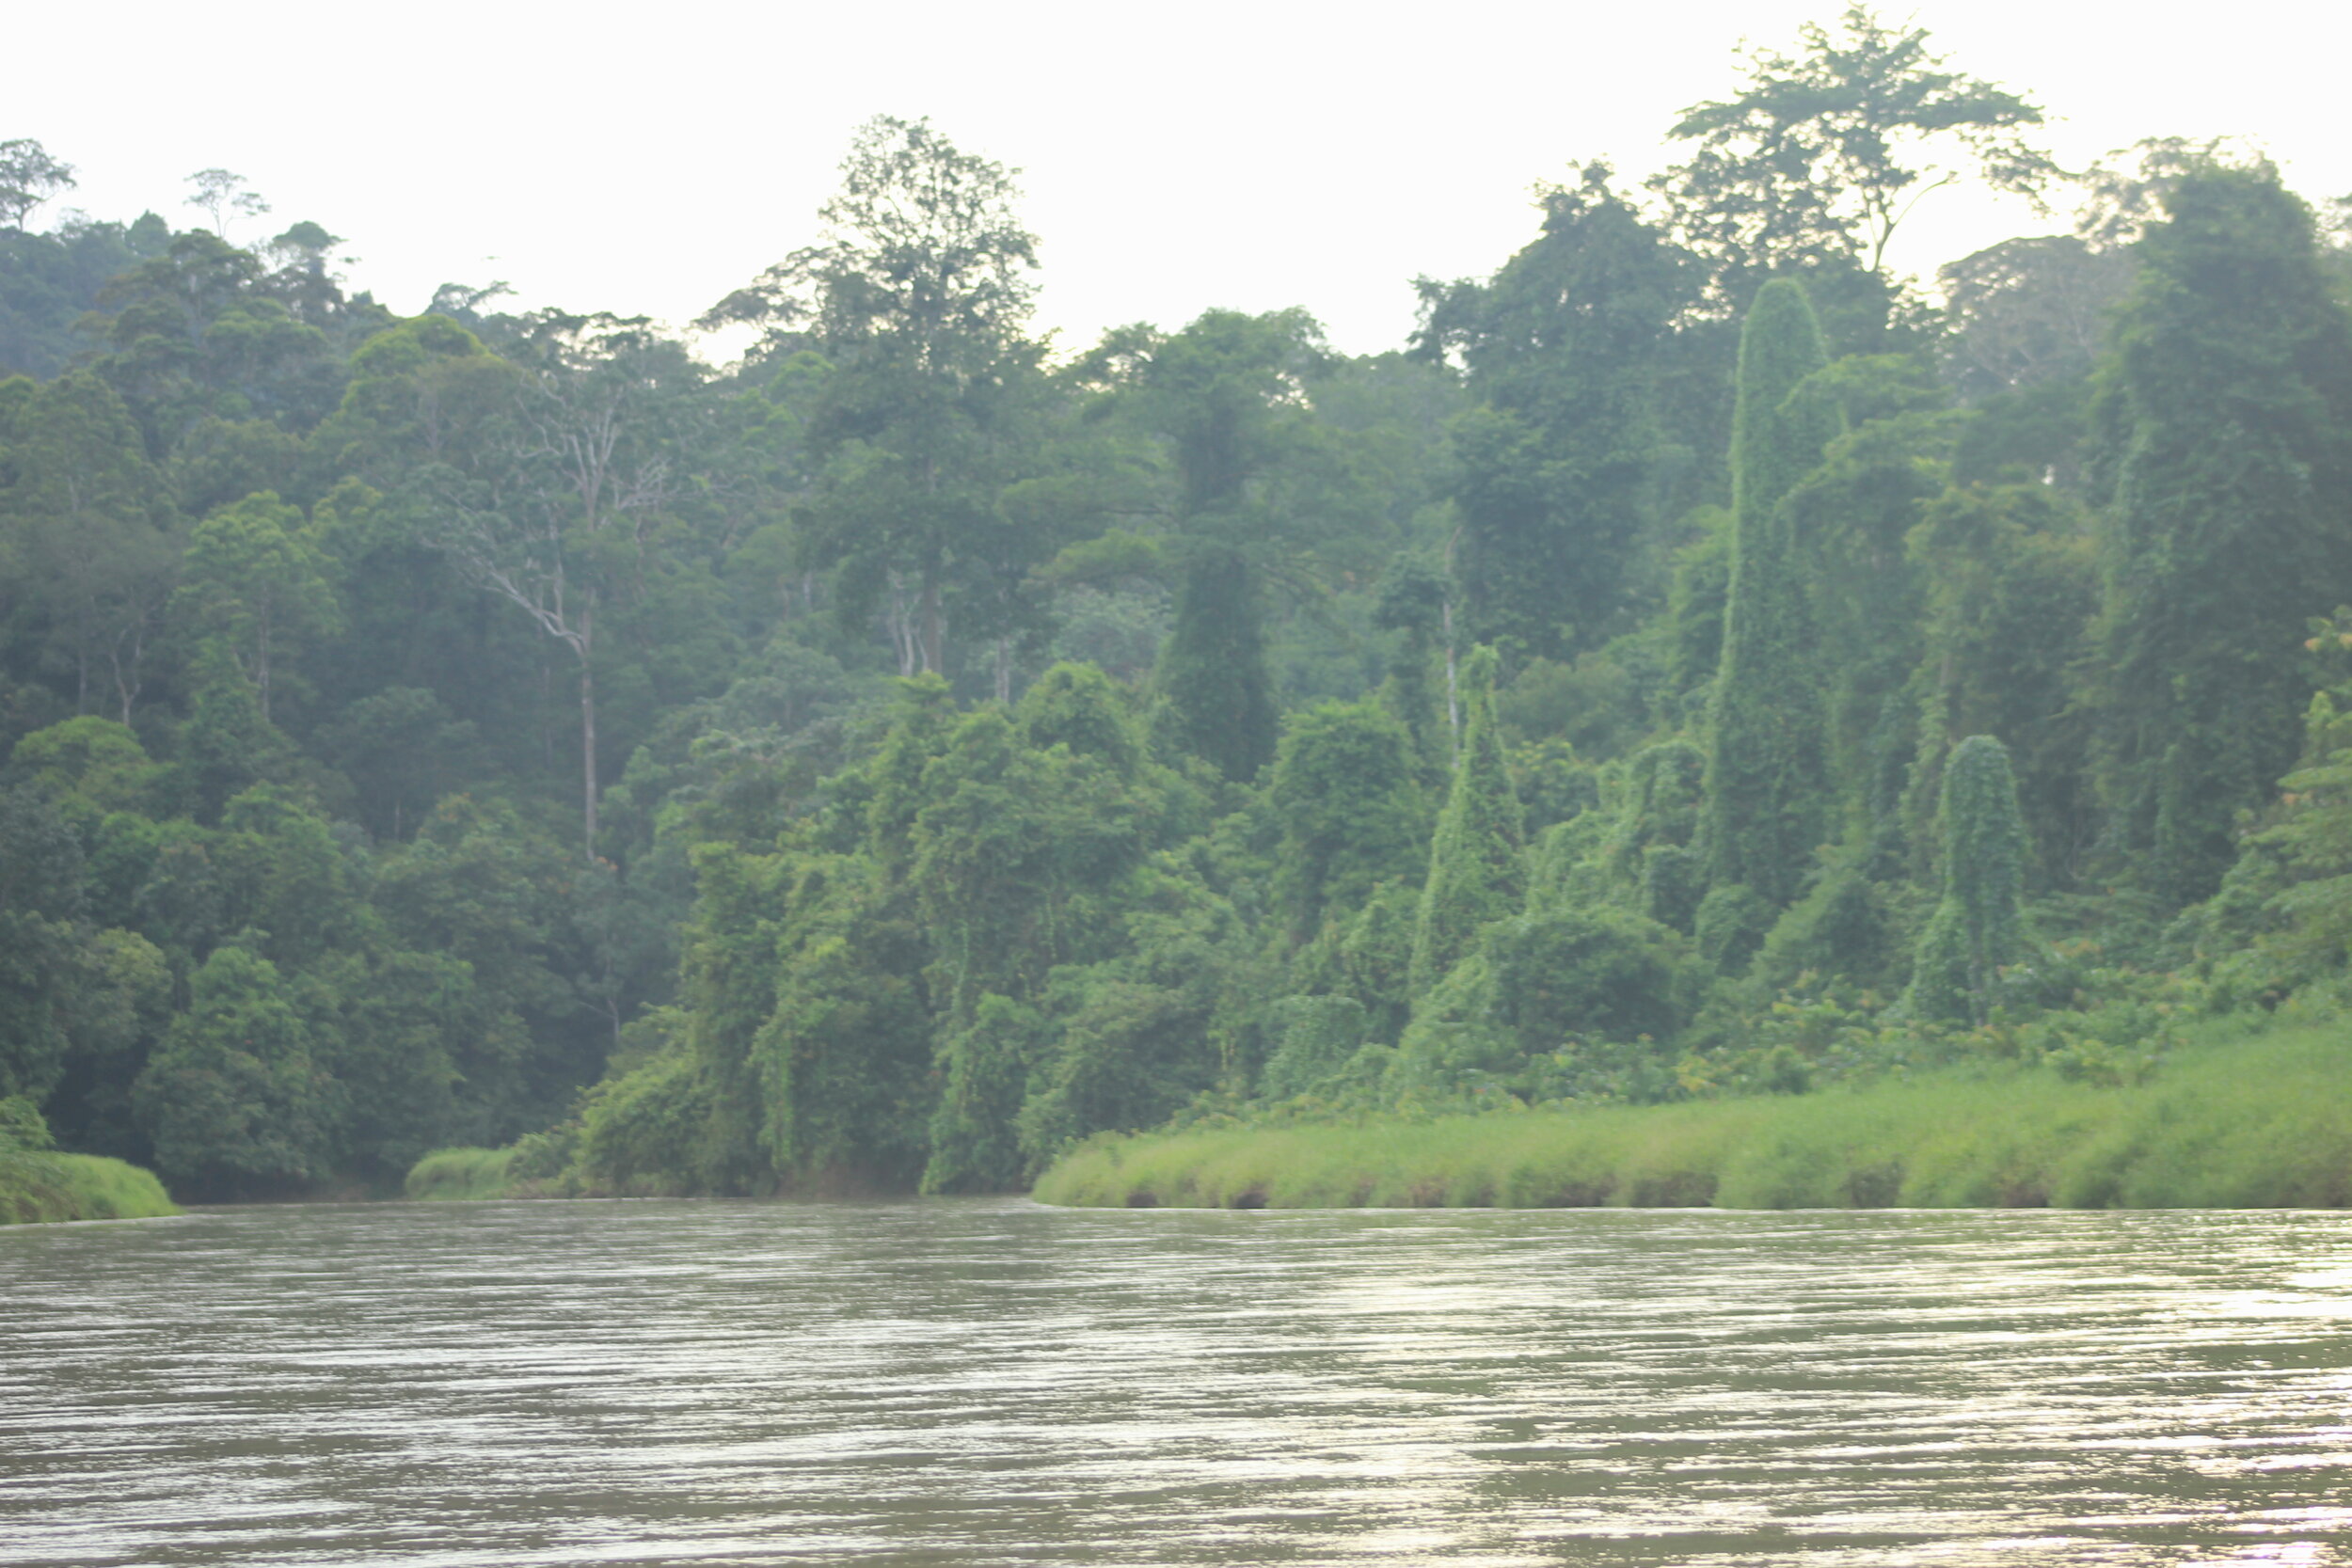 Dense overgrown rainforest on the river banks